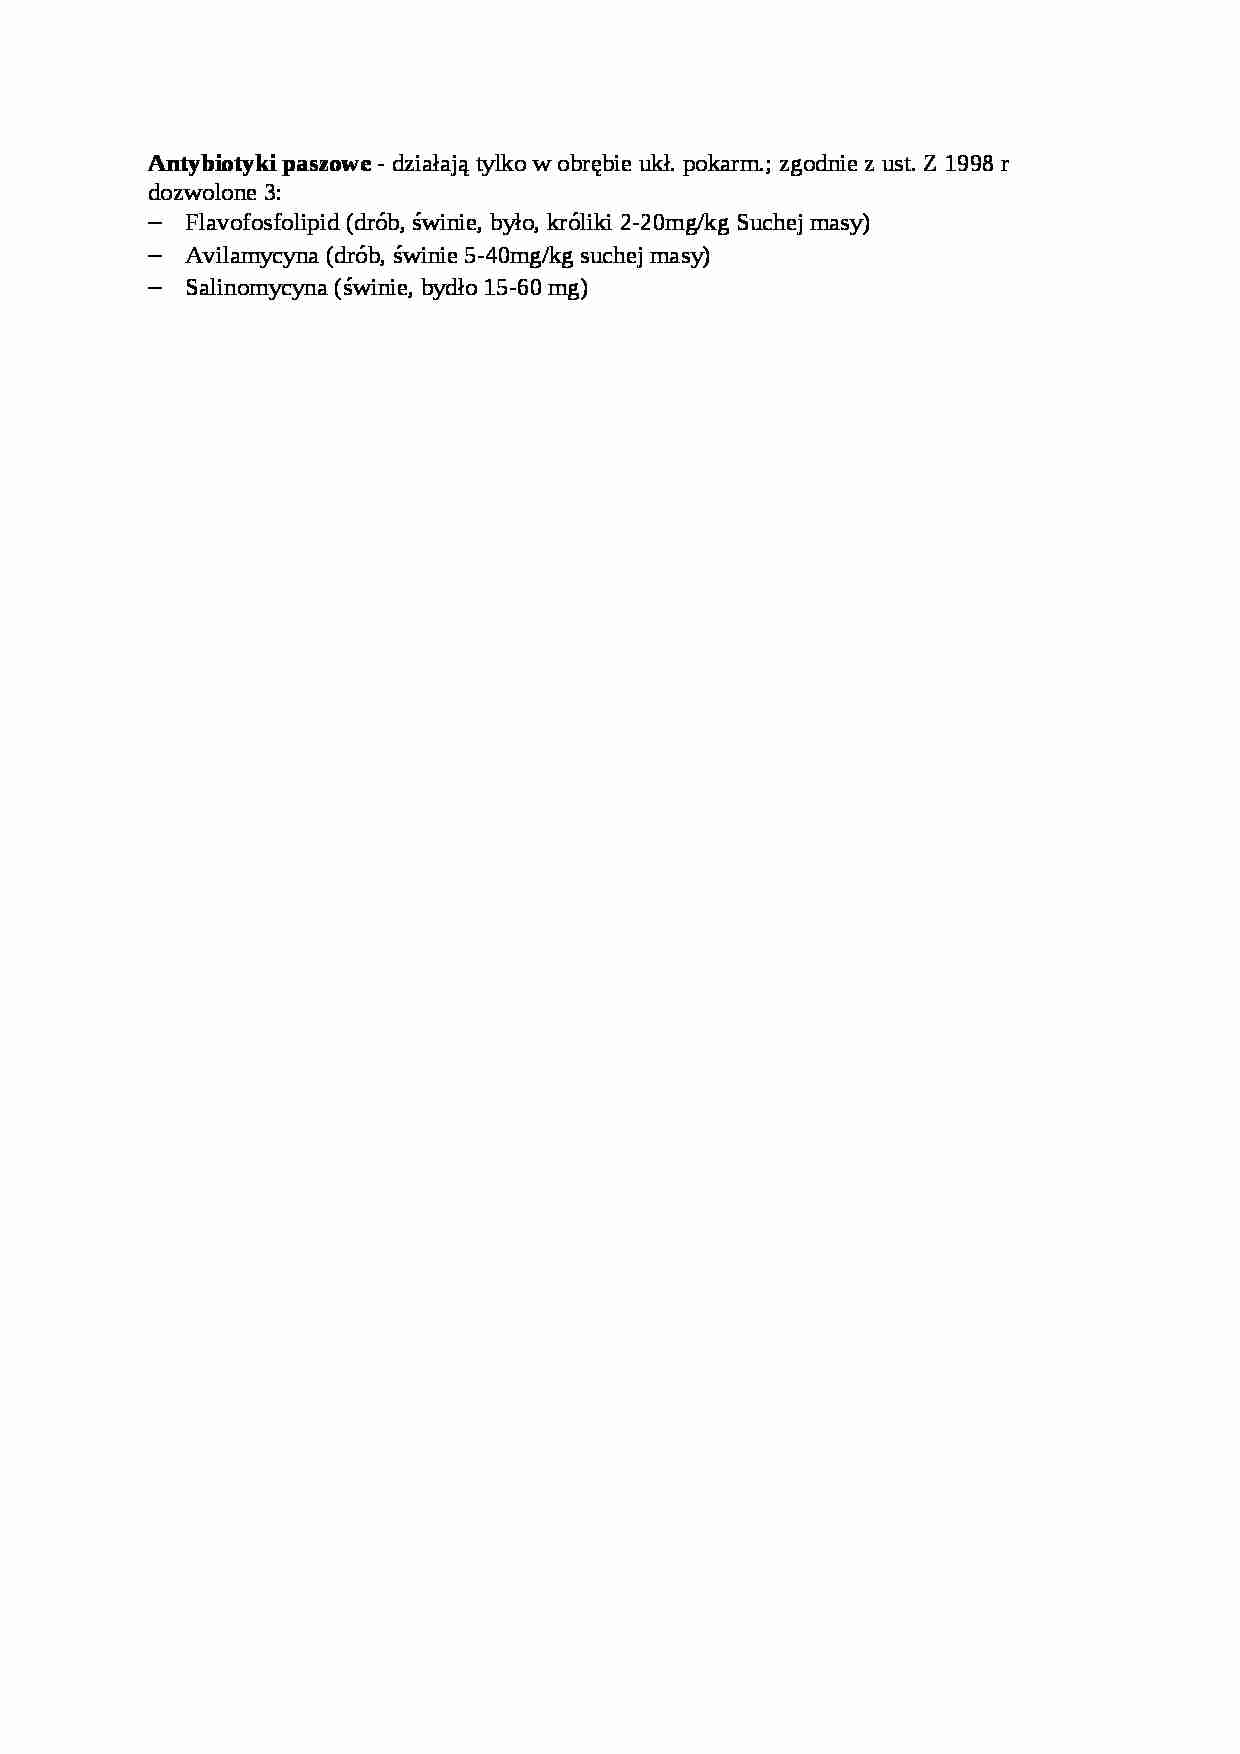 Opracowanie - trawienie poligastryczne- antybiotyki paszowe, sem IV - strona 1